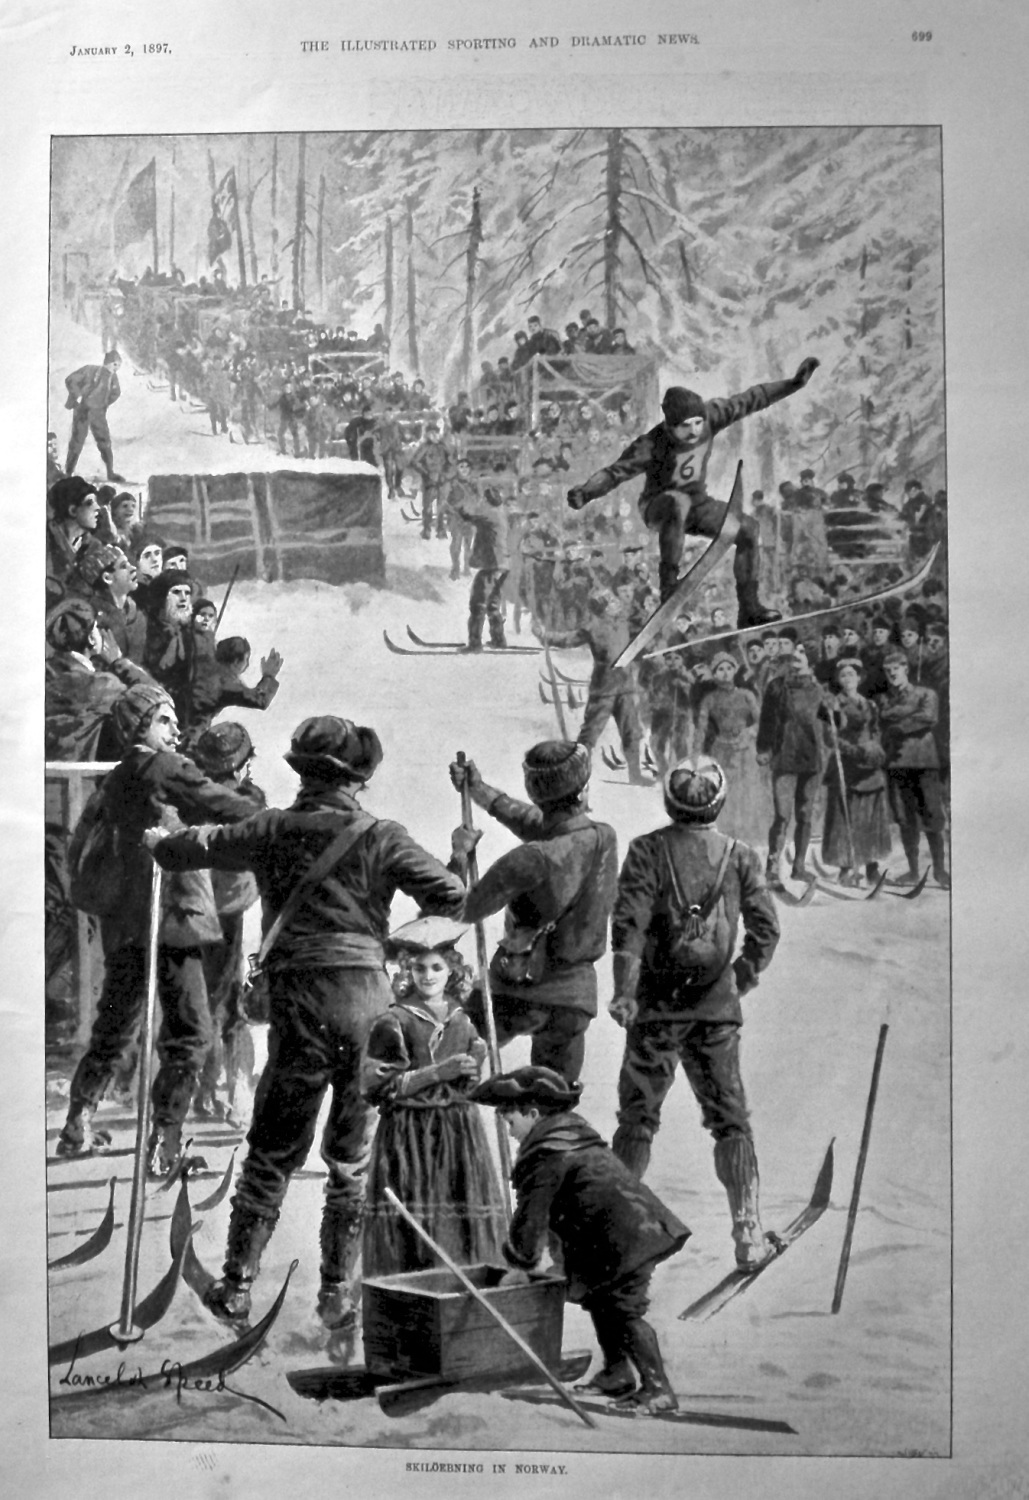 Skiloebning in Norway. 1897.